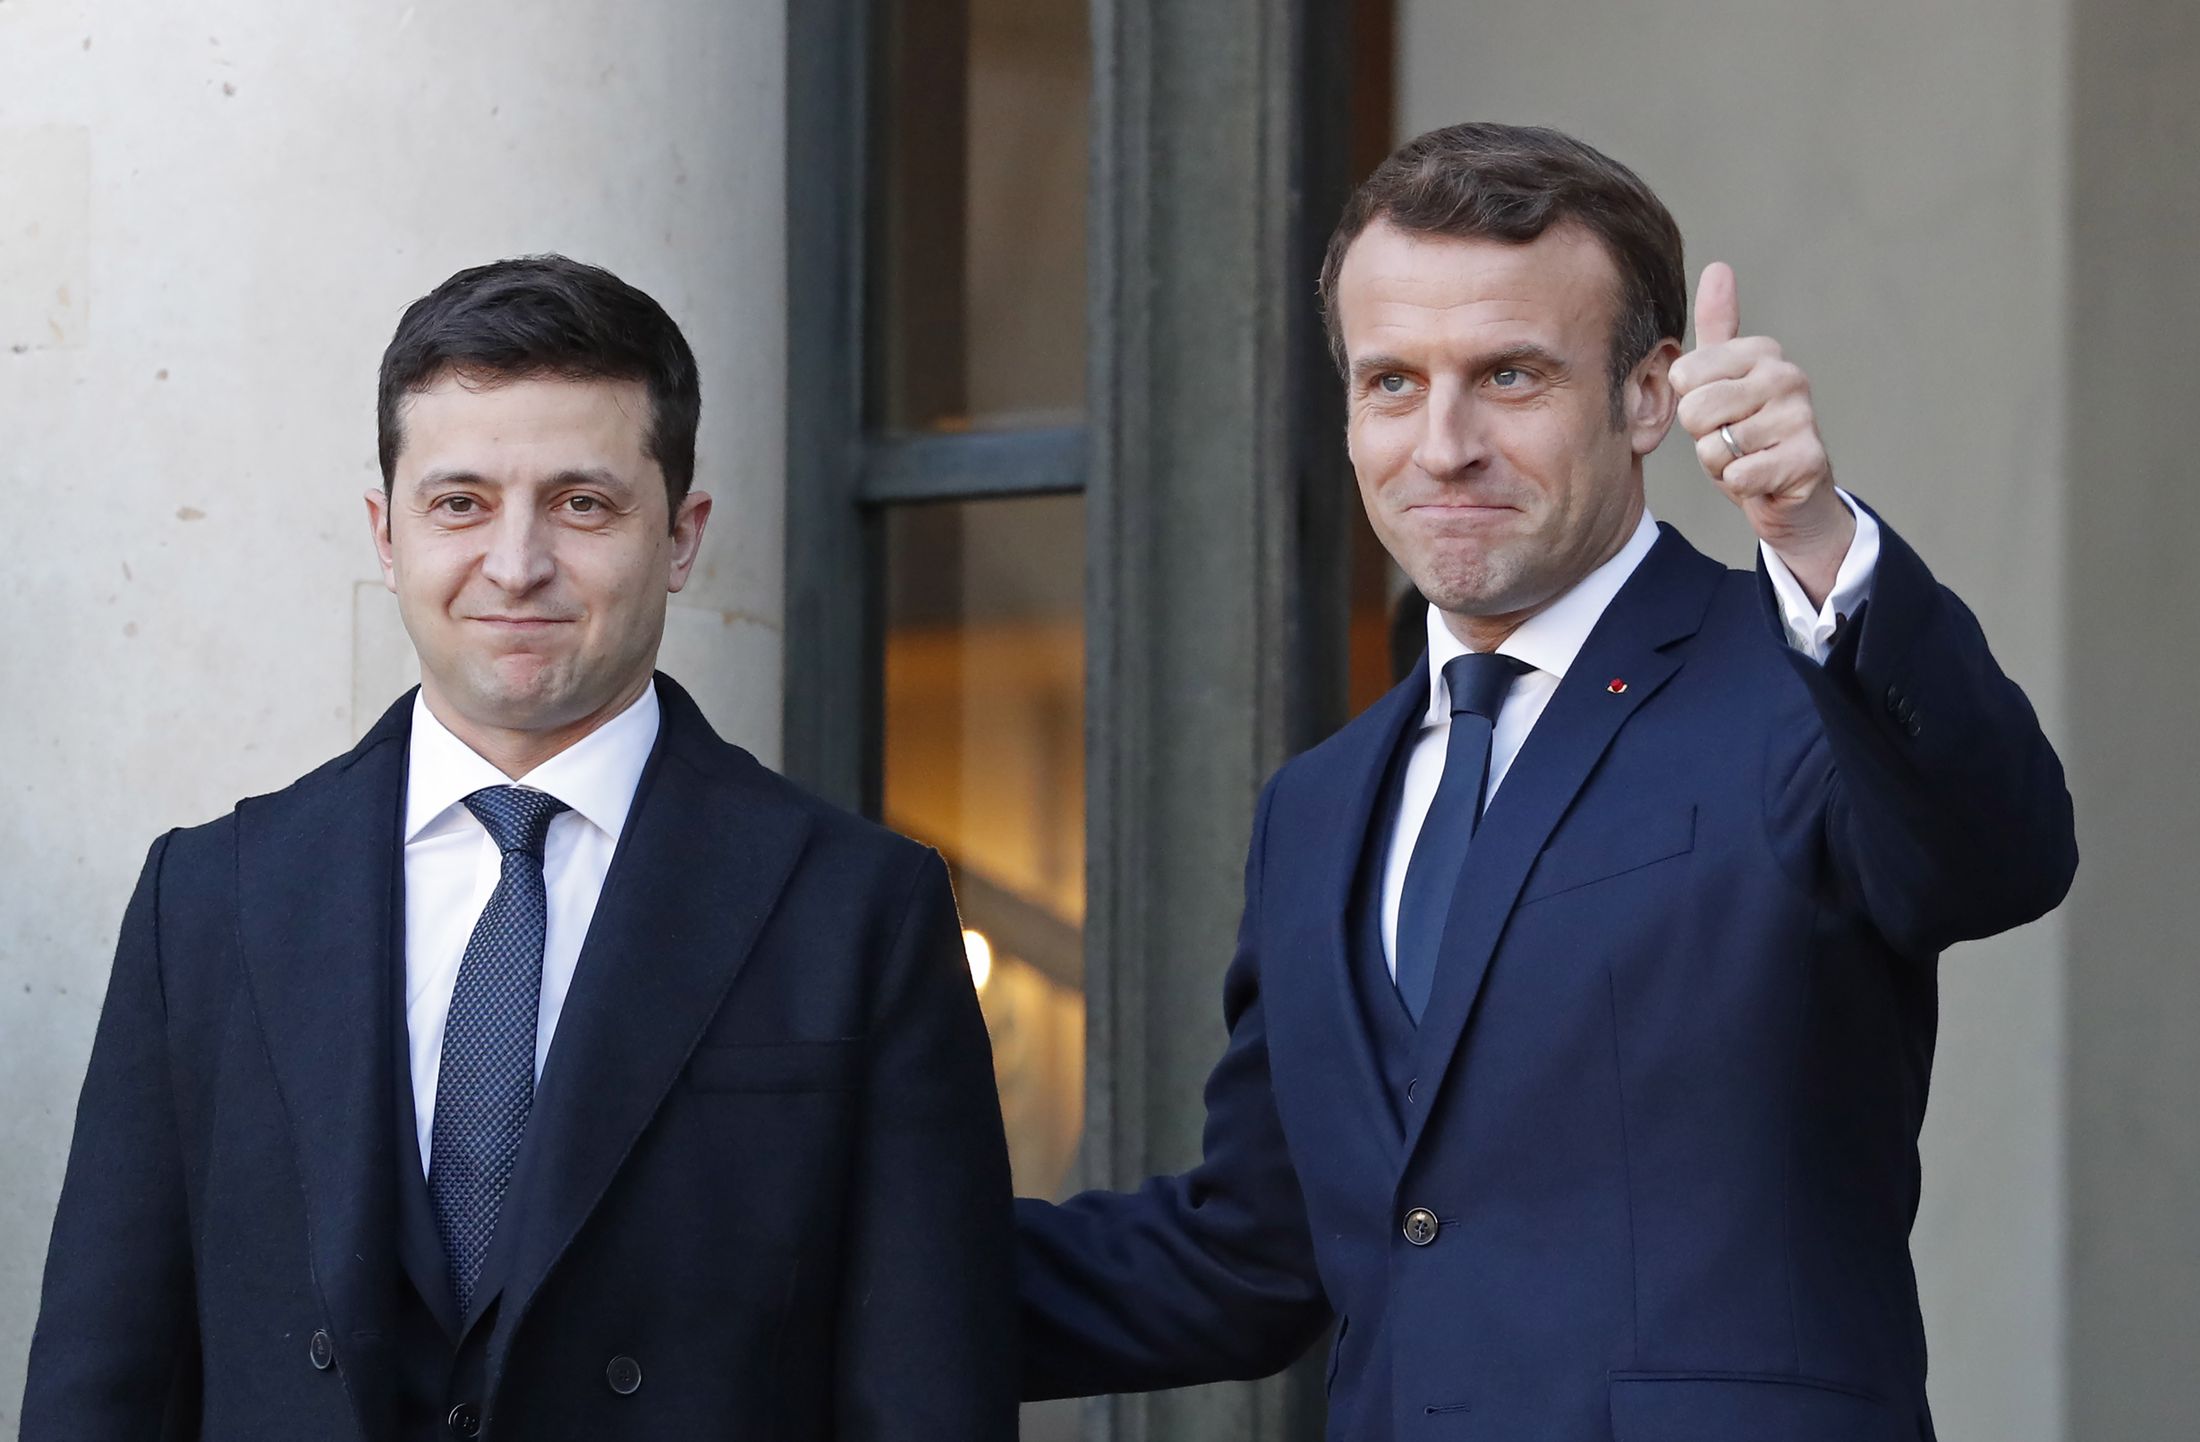 Зеленский и Макрон договорились о трехстороннем звонке в формате Украина-Франция-Германия по обсуждению ситуации на Донбассе, а также о приезде Макрона в Киев